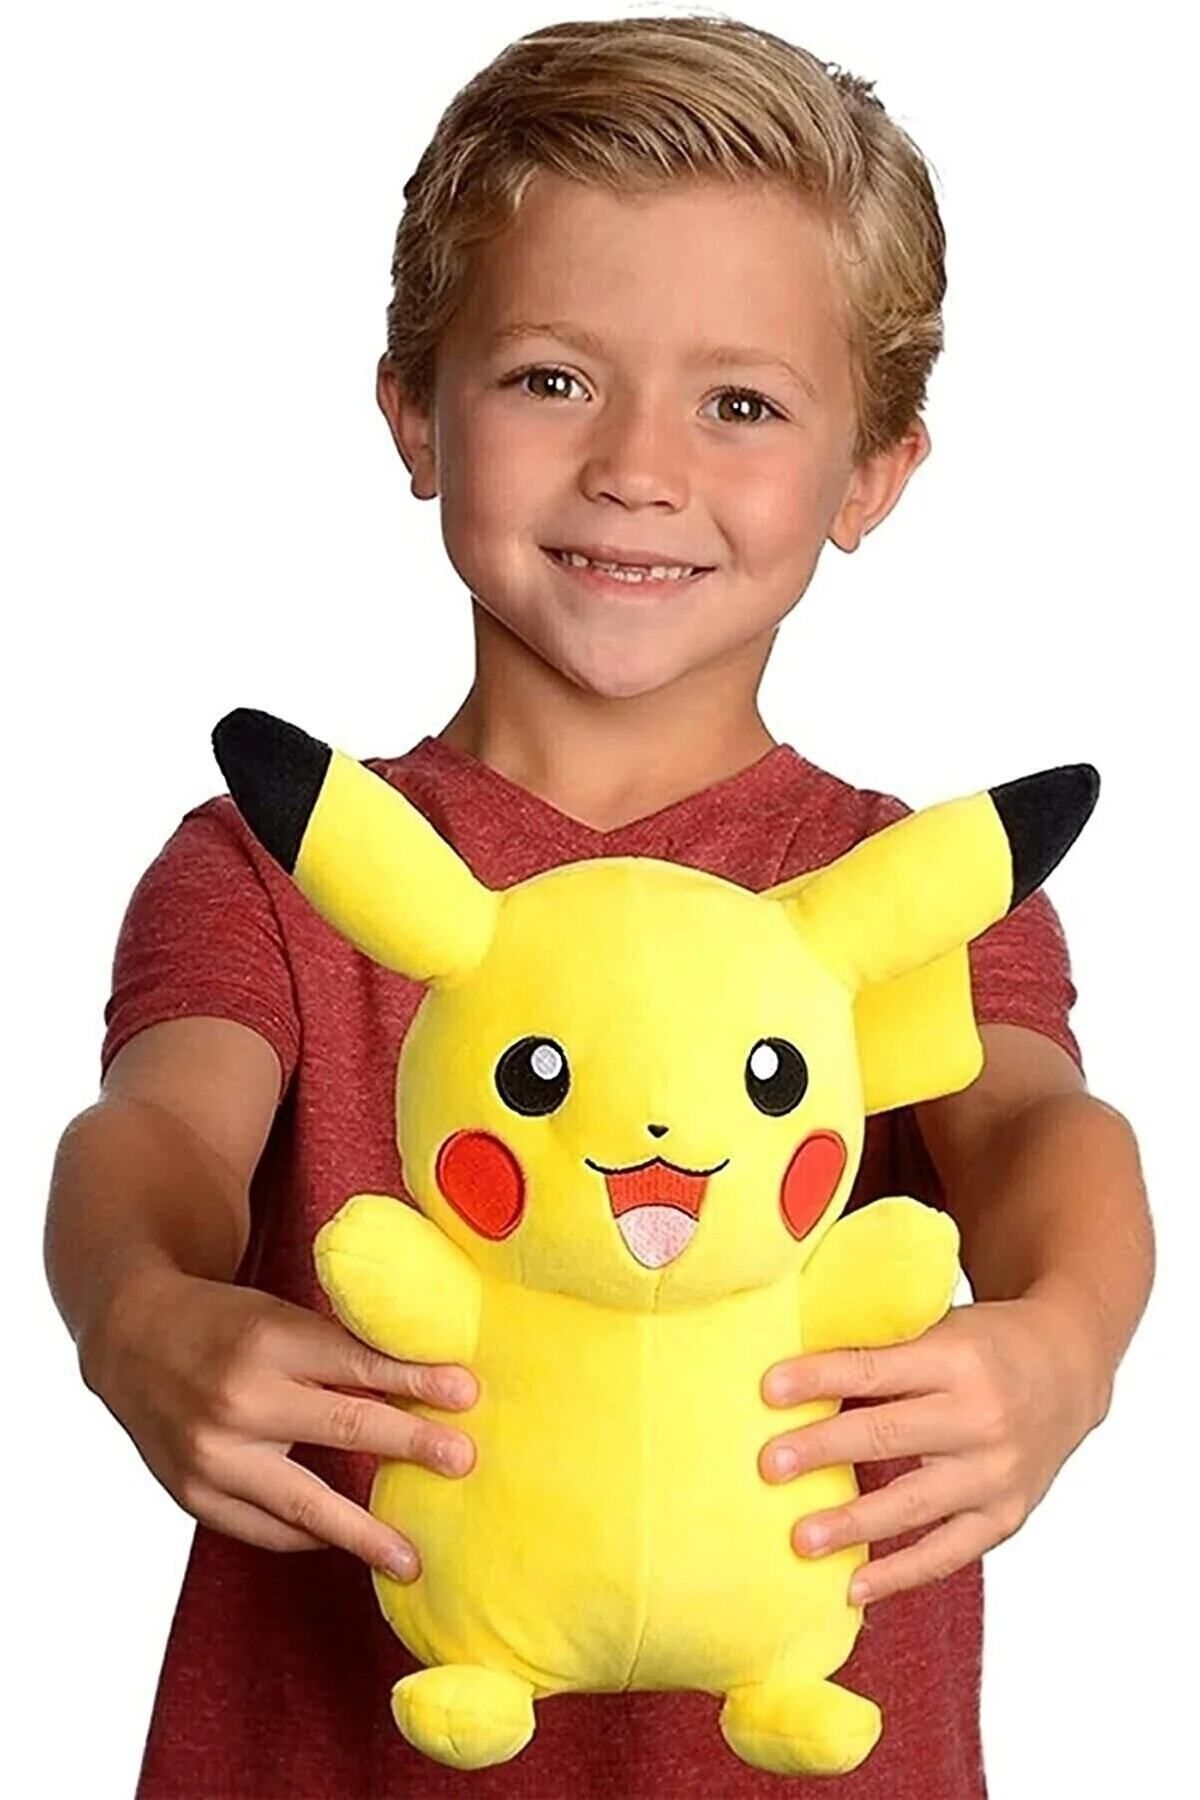 emal Ithal Kumaş Pikachu Pokemon Go Figür Peluş Oyuncak Büyük Boy Uyku & Oyun Arkadaşı Pikachu 35cm